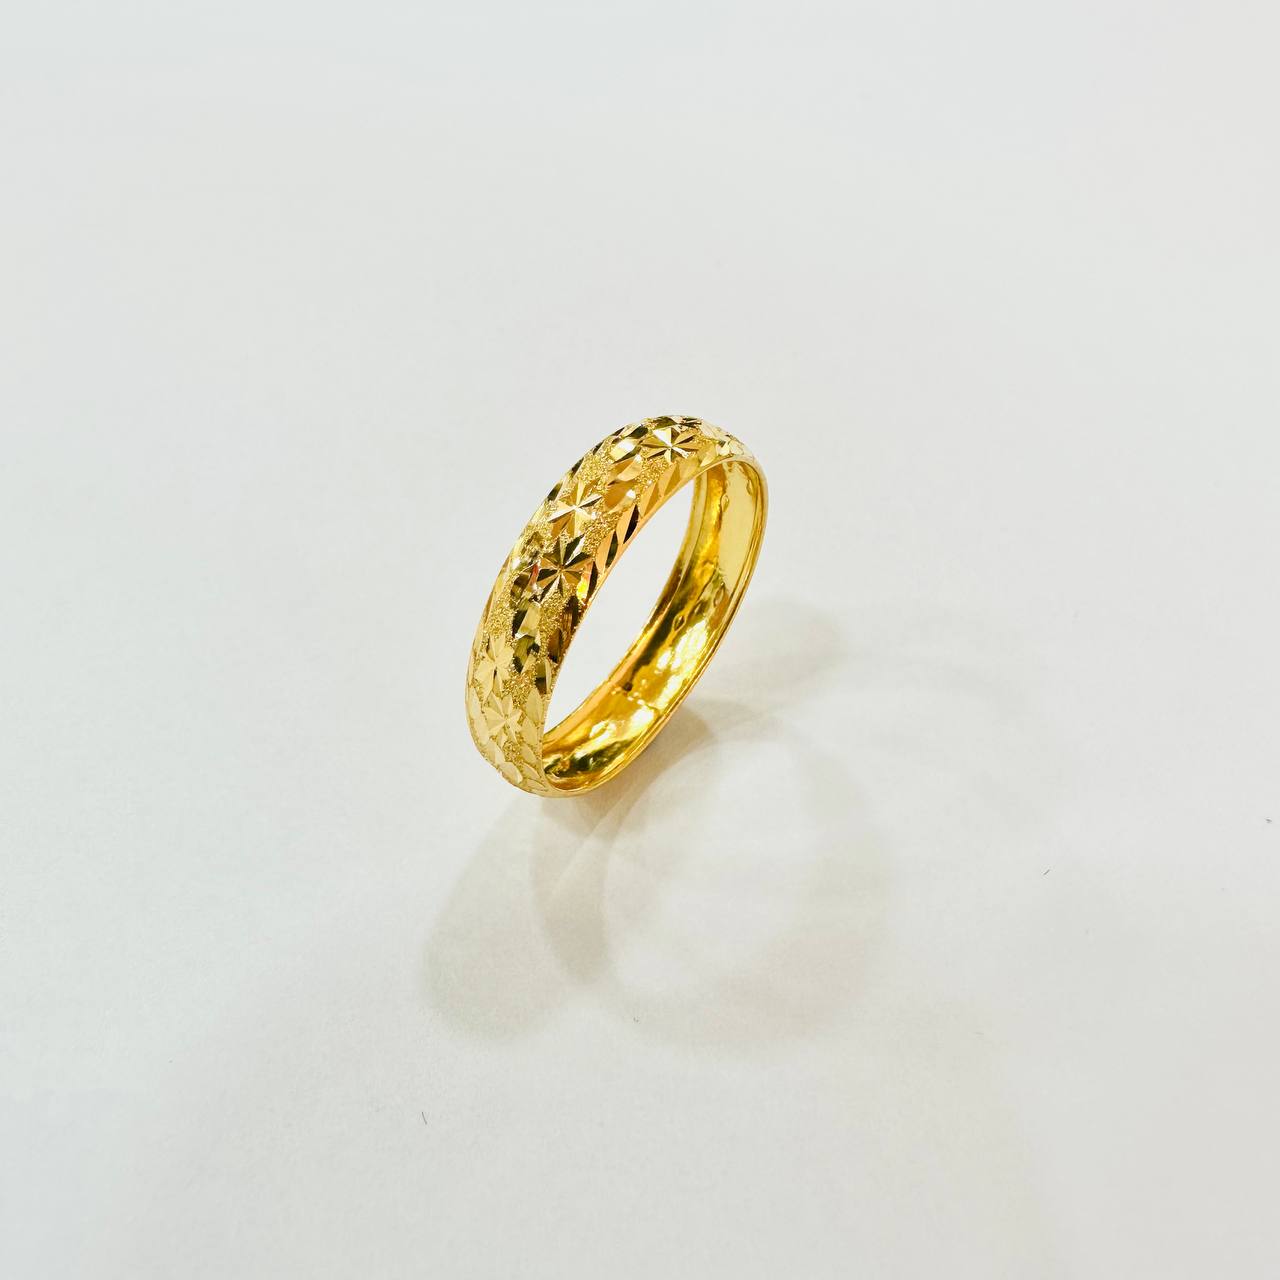 22k / 916 Gold Hollow Ring Design V4-916 gold-Best Gold Shop